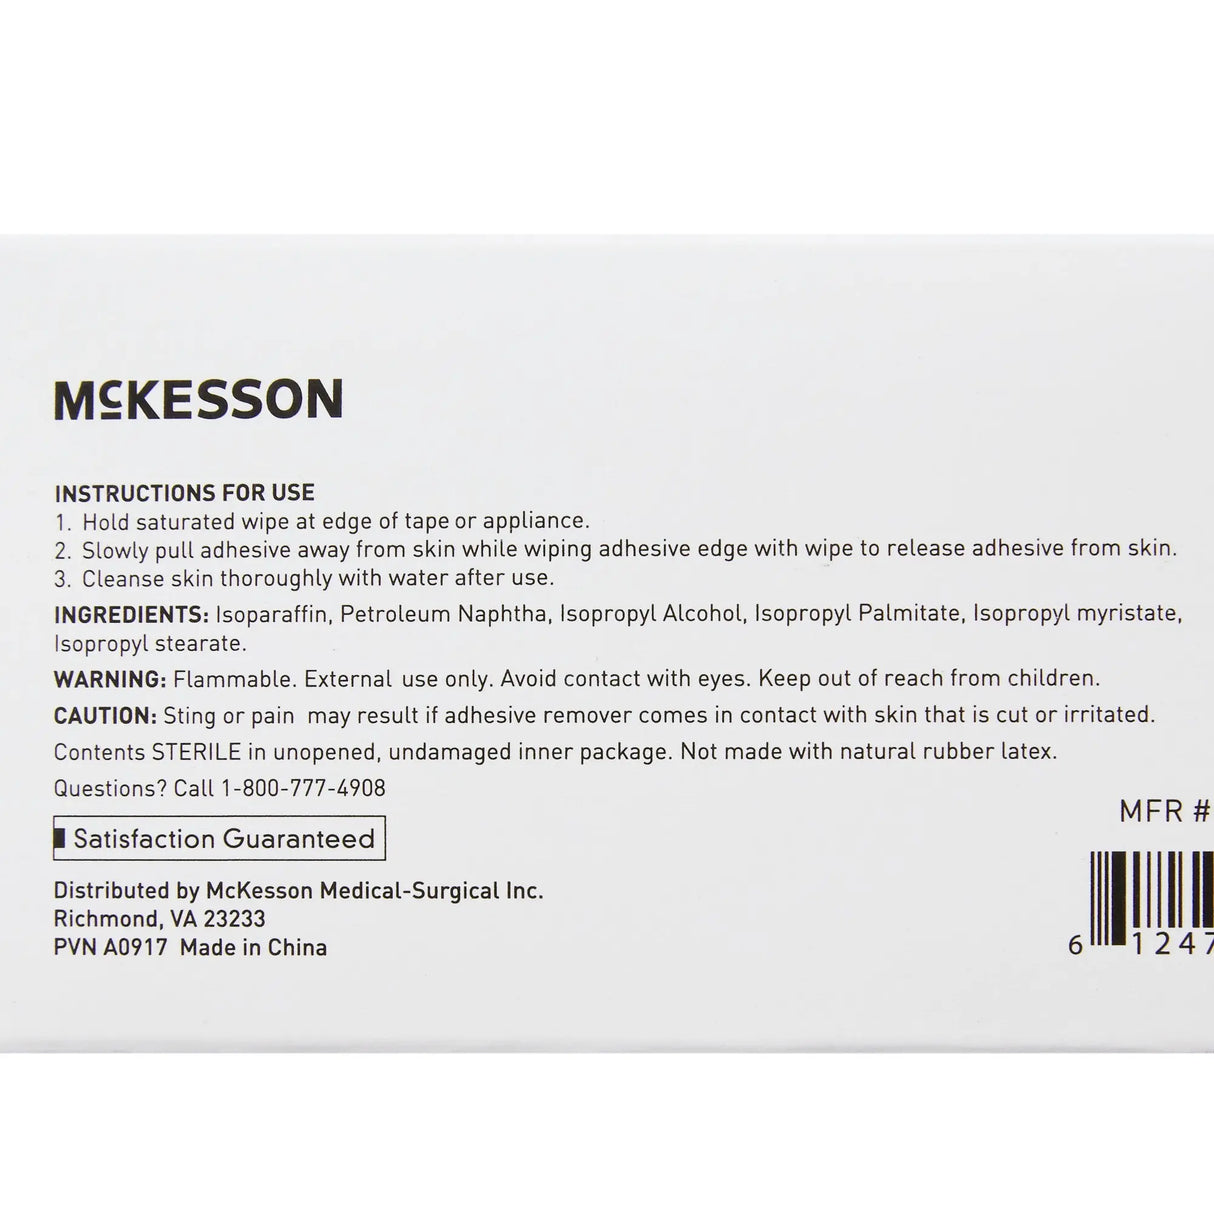 McKesson Adhesive Remover, 2-2/5 x 2-2/5 Inch Wipe